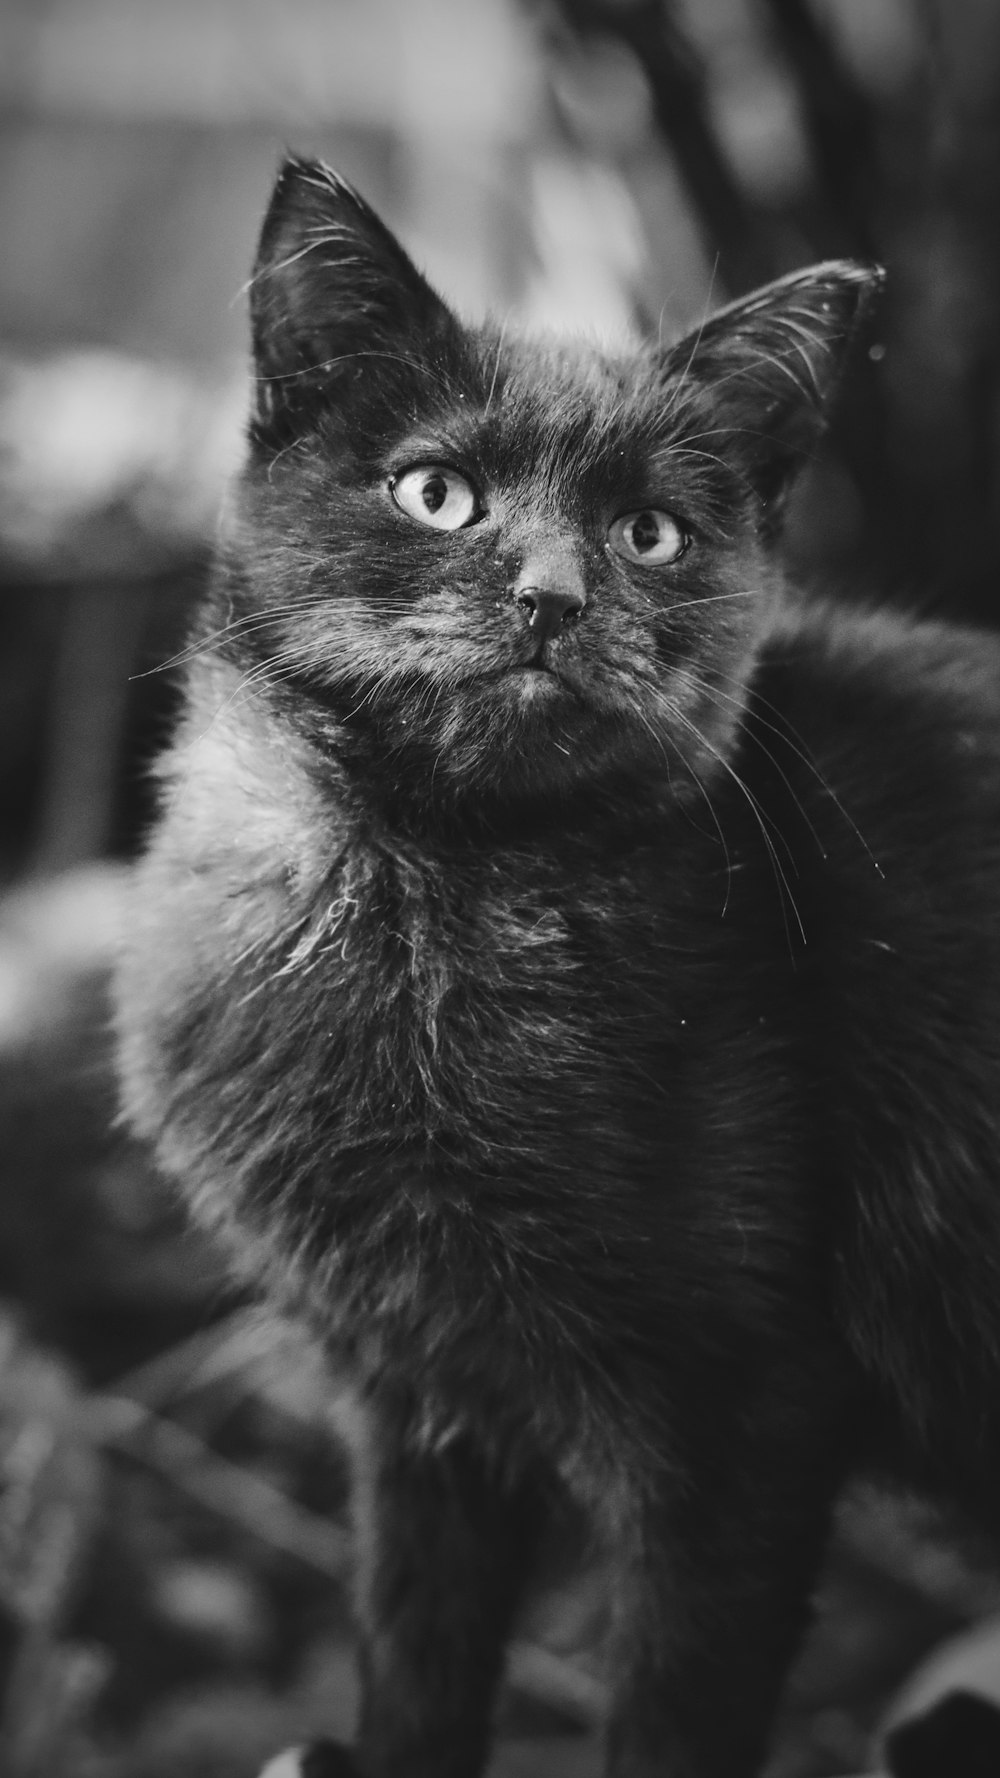 회색조 사진의 검은 고양이